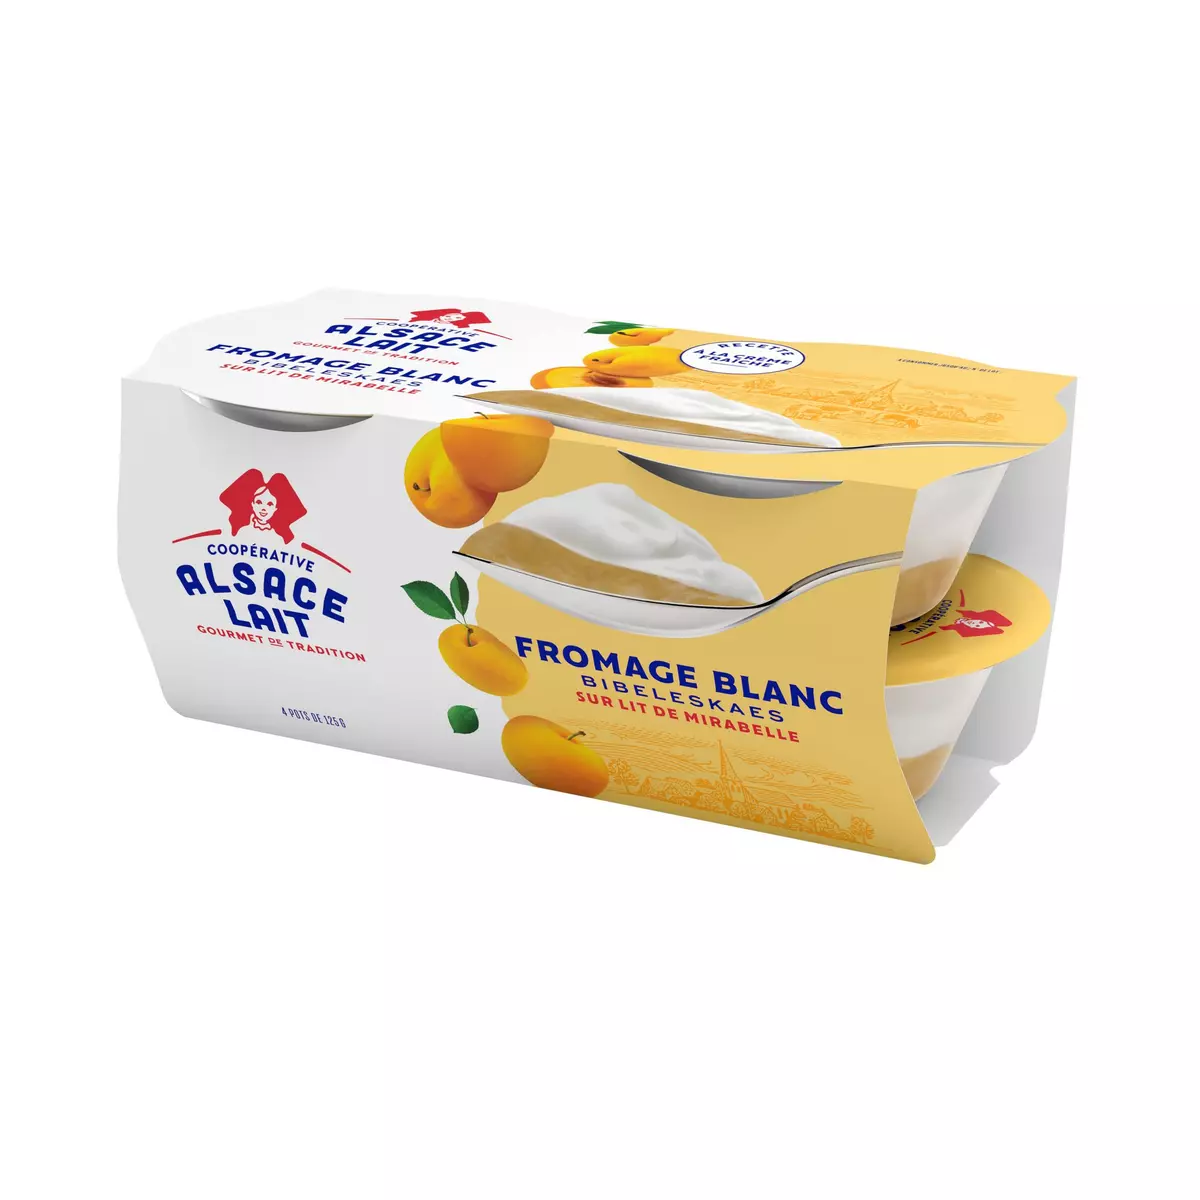 ALSACE LAIT Fromage blanc sur lit de mirabelles 4x125g